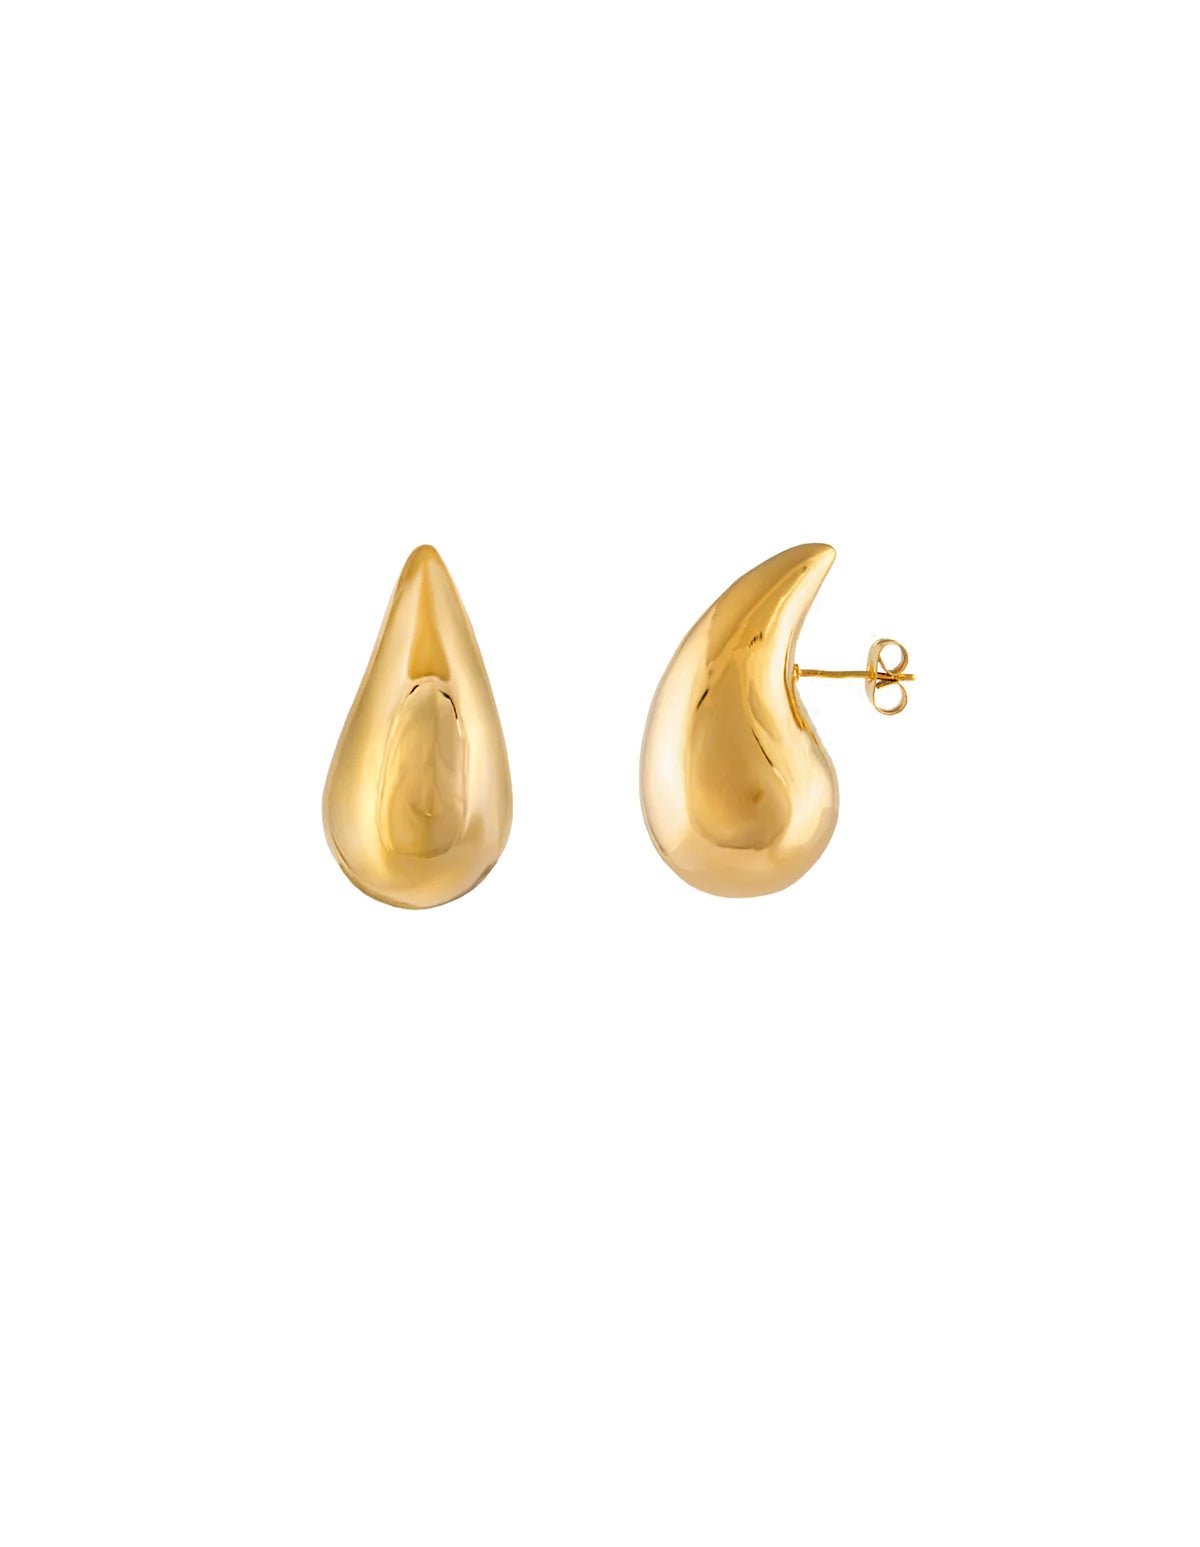 Duo Jewellery Earrings Yellow Gold Teddy Earrings